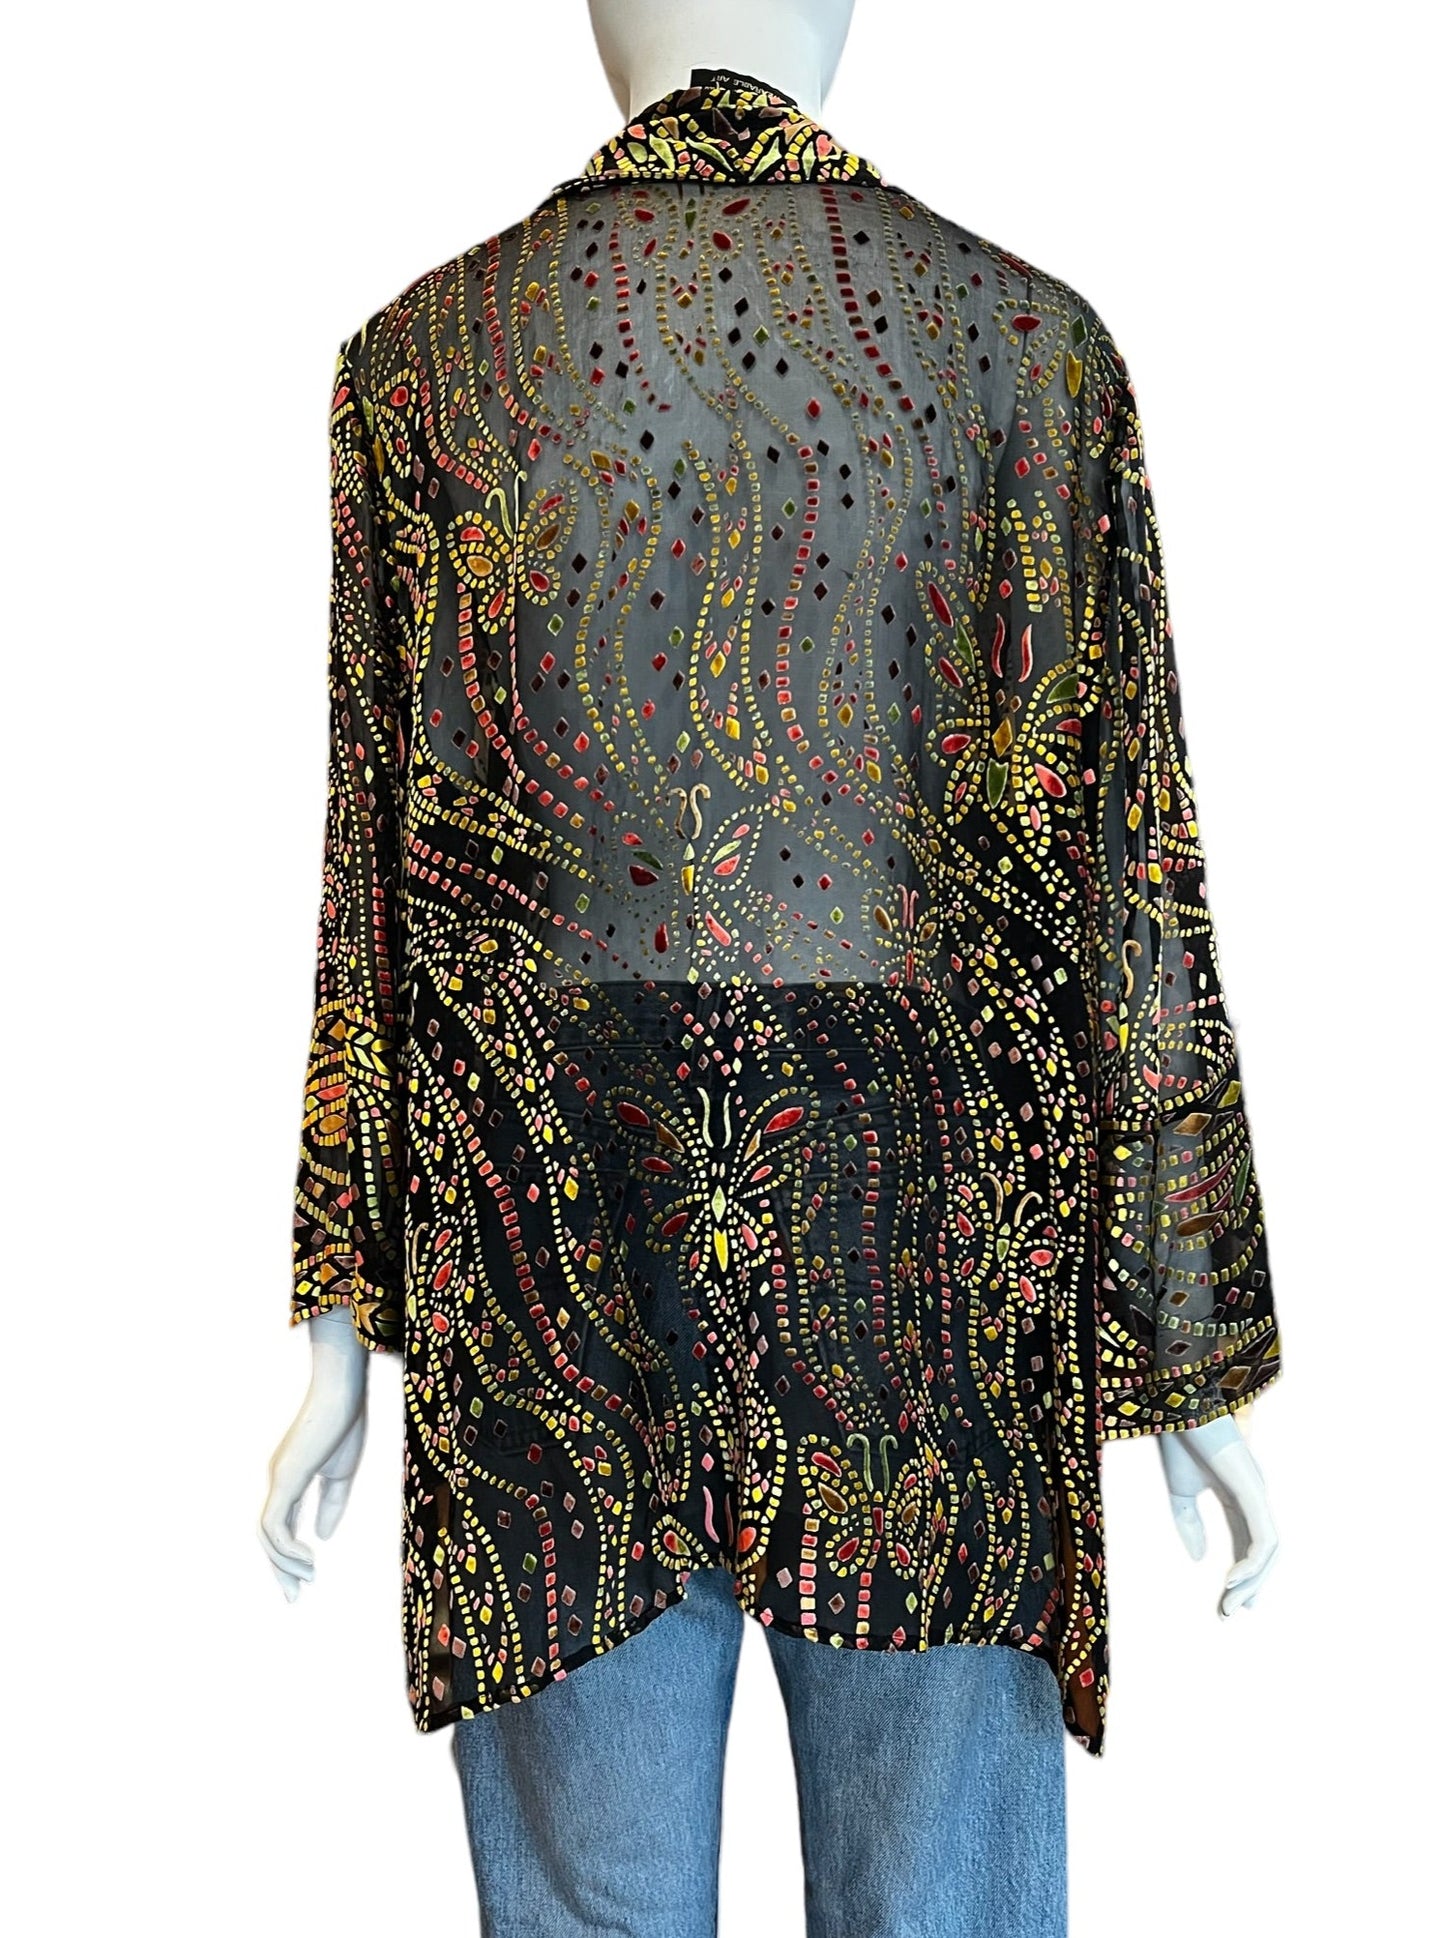 bob mackie stunning sheer blouse with velvet pastel artwork design pattern buttondown